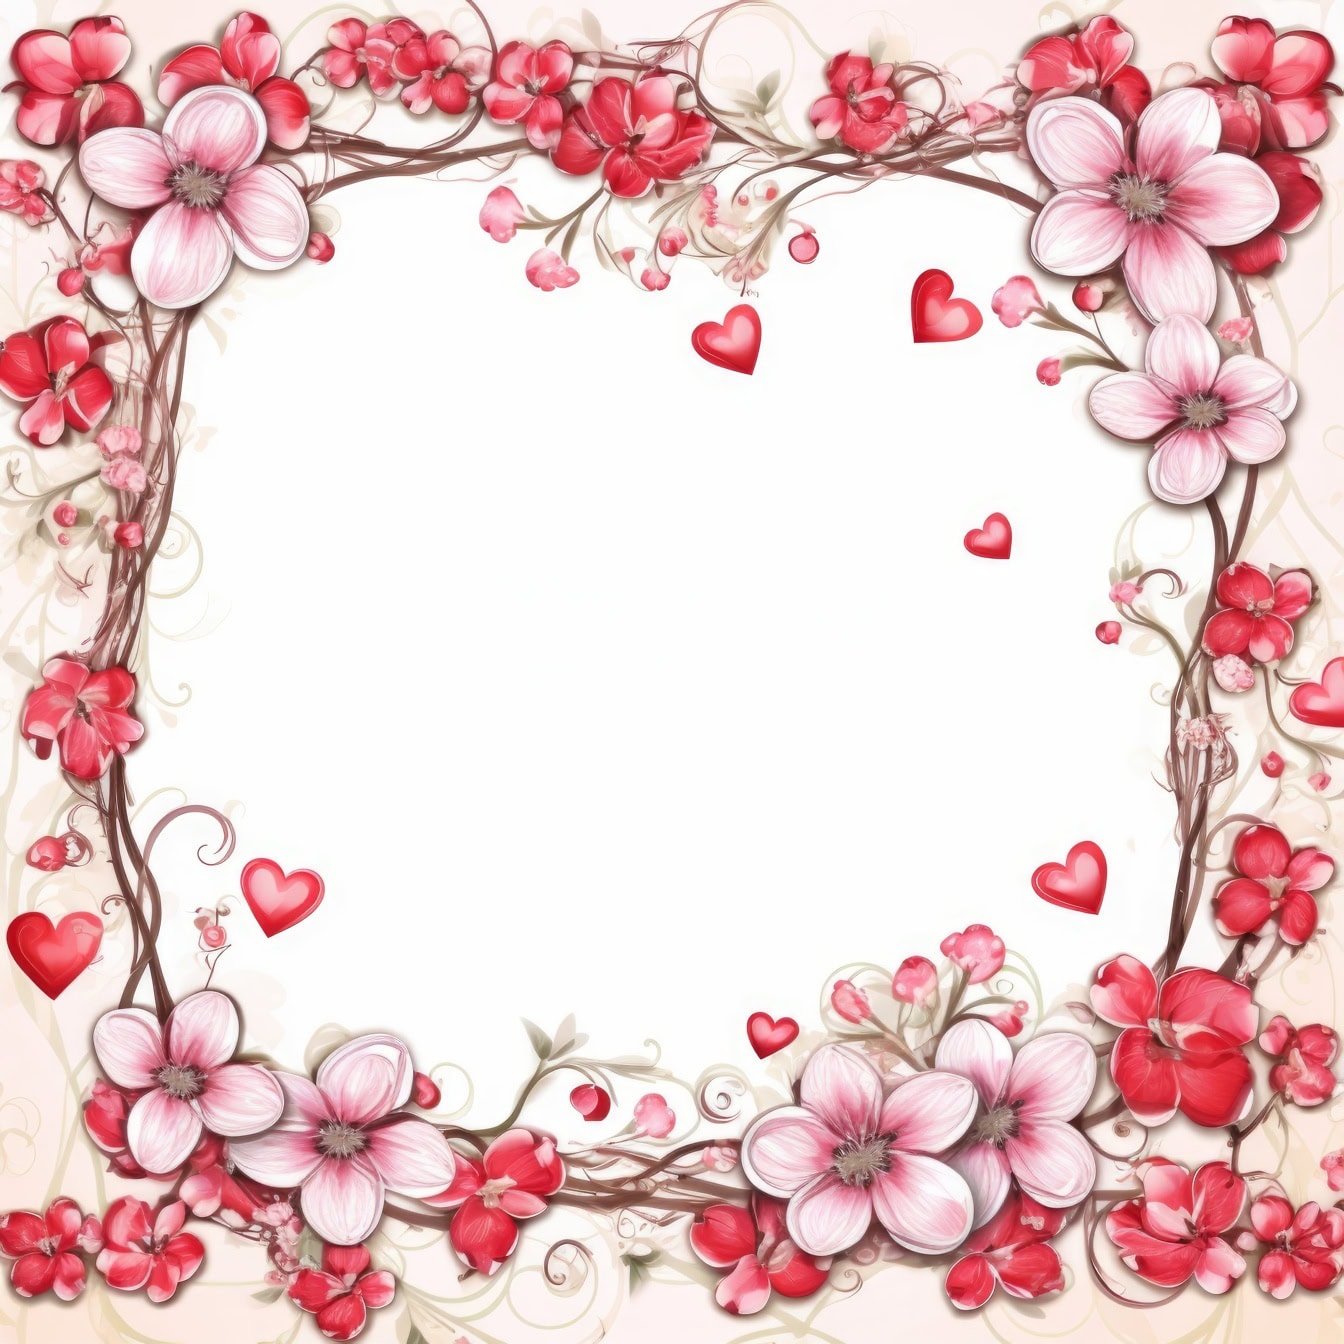 Mẫu thiệp chúc mừng lãng mạn với khung hoa và trái tim với tông màu hồng